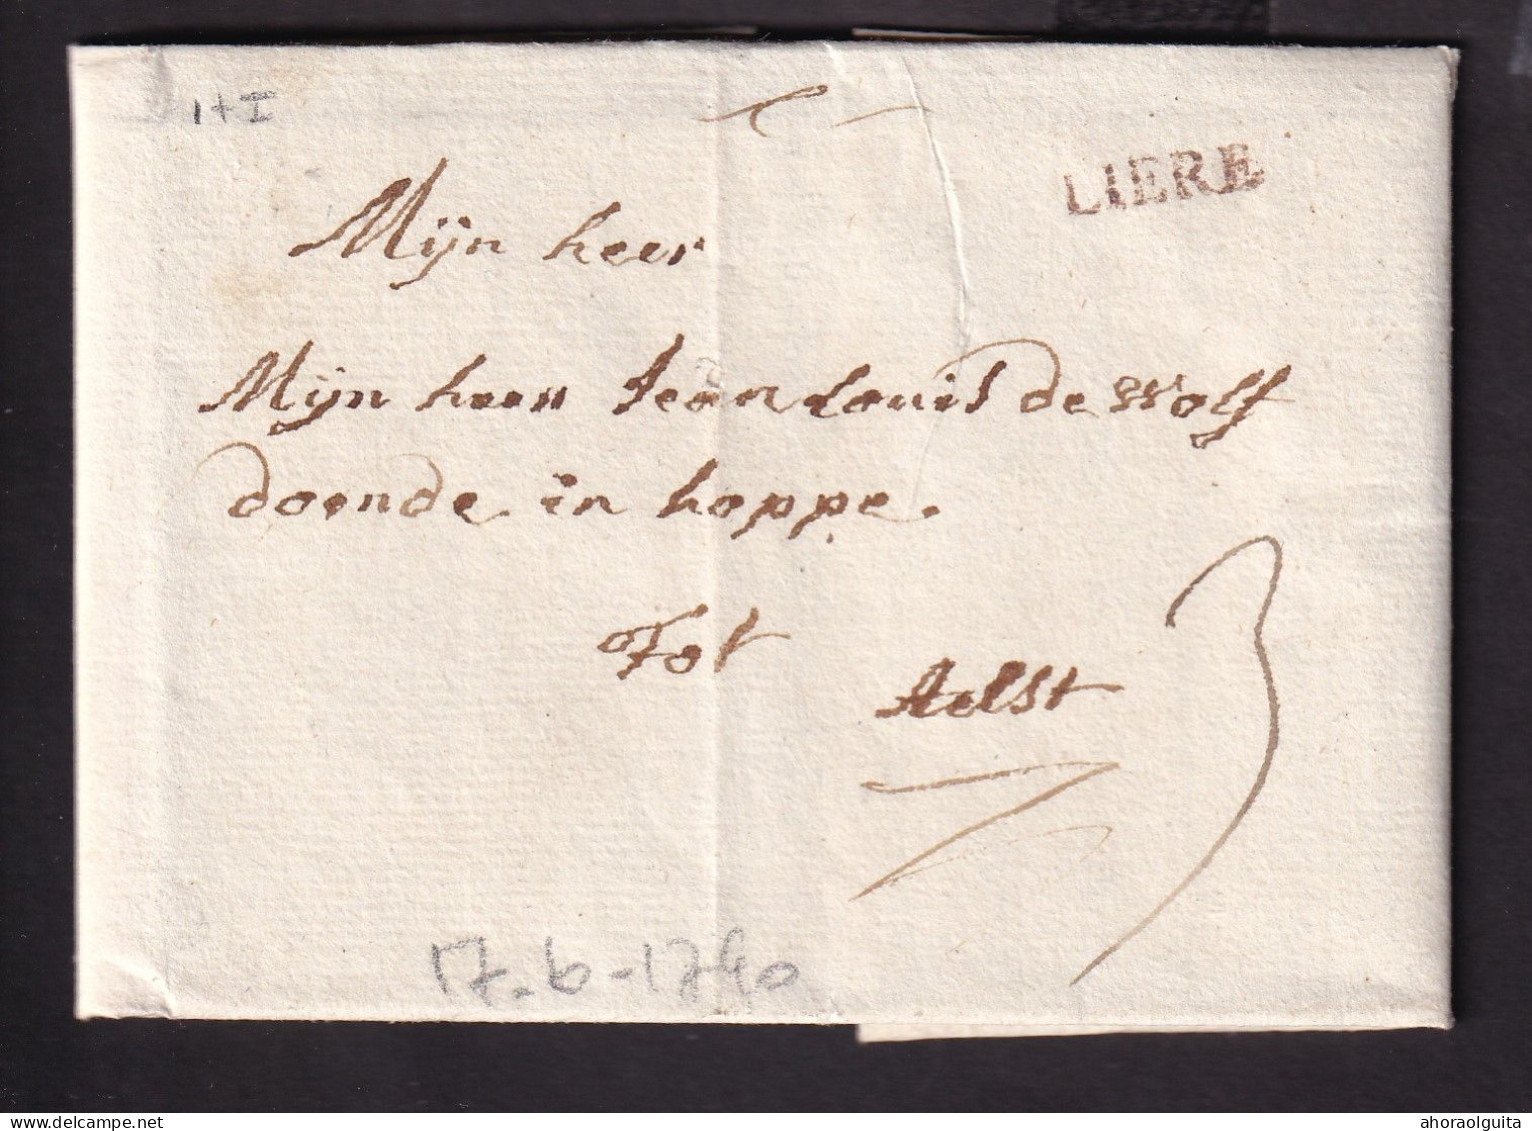 DDCC 403 - Lettre Précurseur 17 Juin 1790 (Révolution Belge) - Griffe H 14 Rouge LIERE Vers AELST - Port 3 St. Encre - 1789-1790 (Revol. Brabanzona)